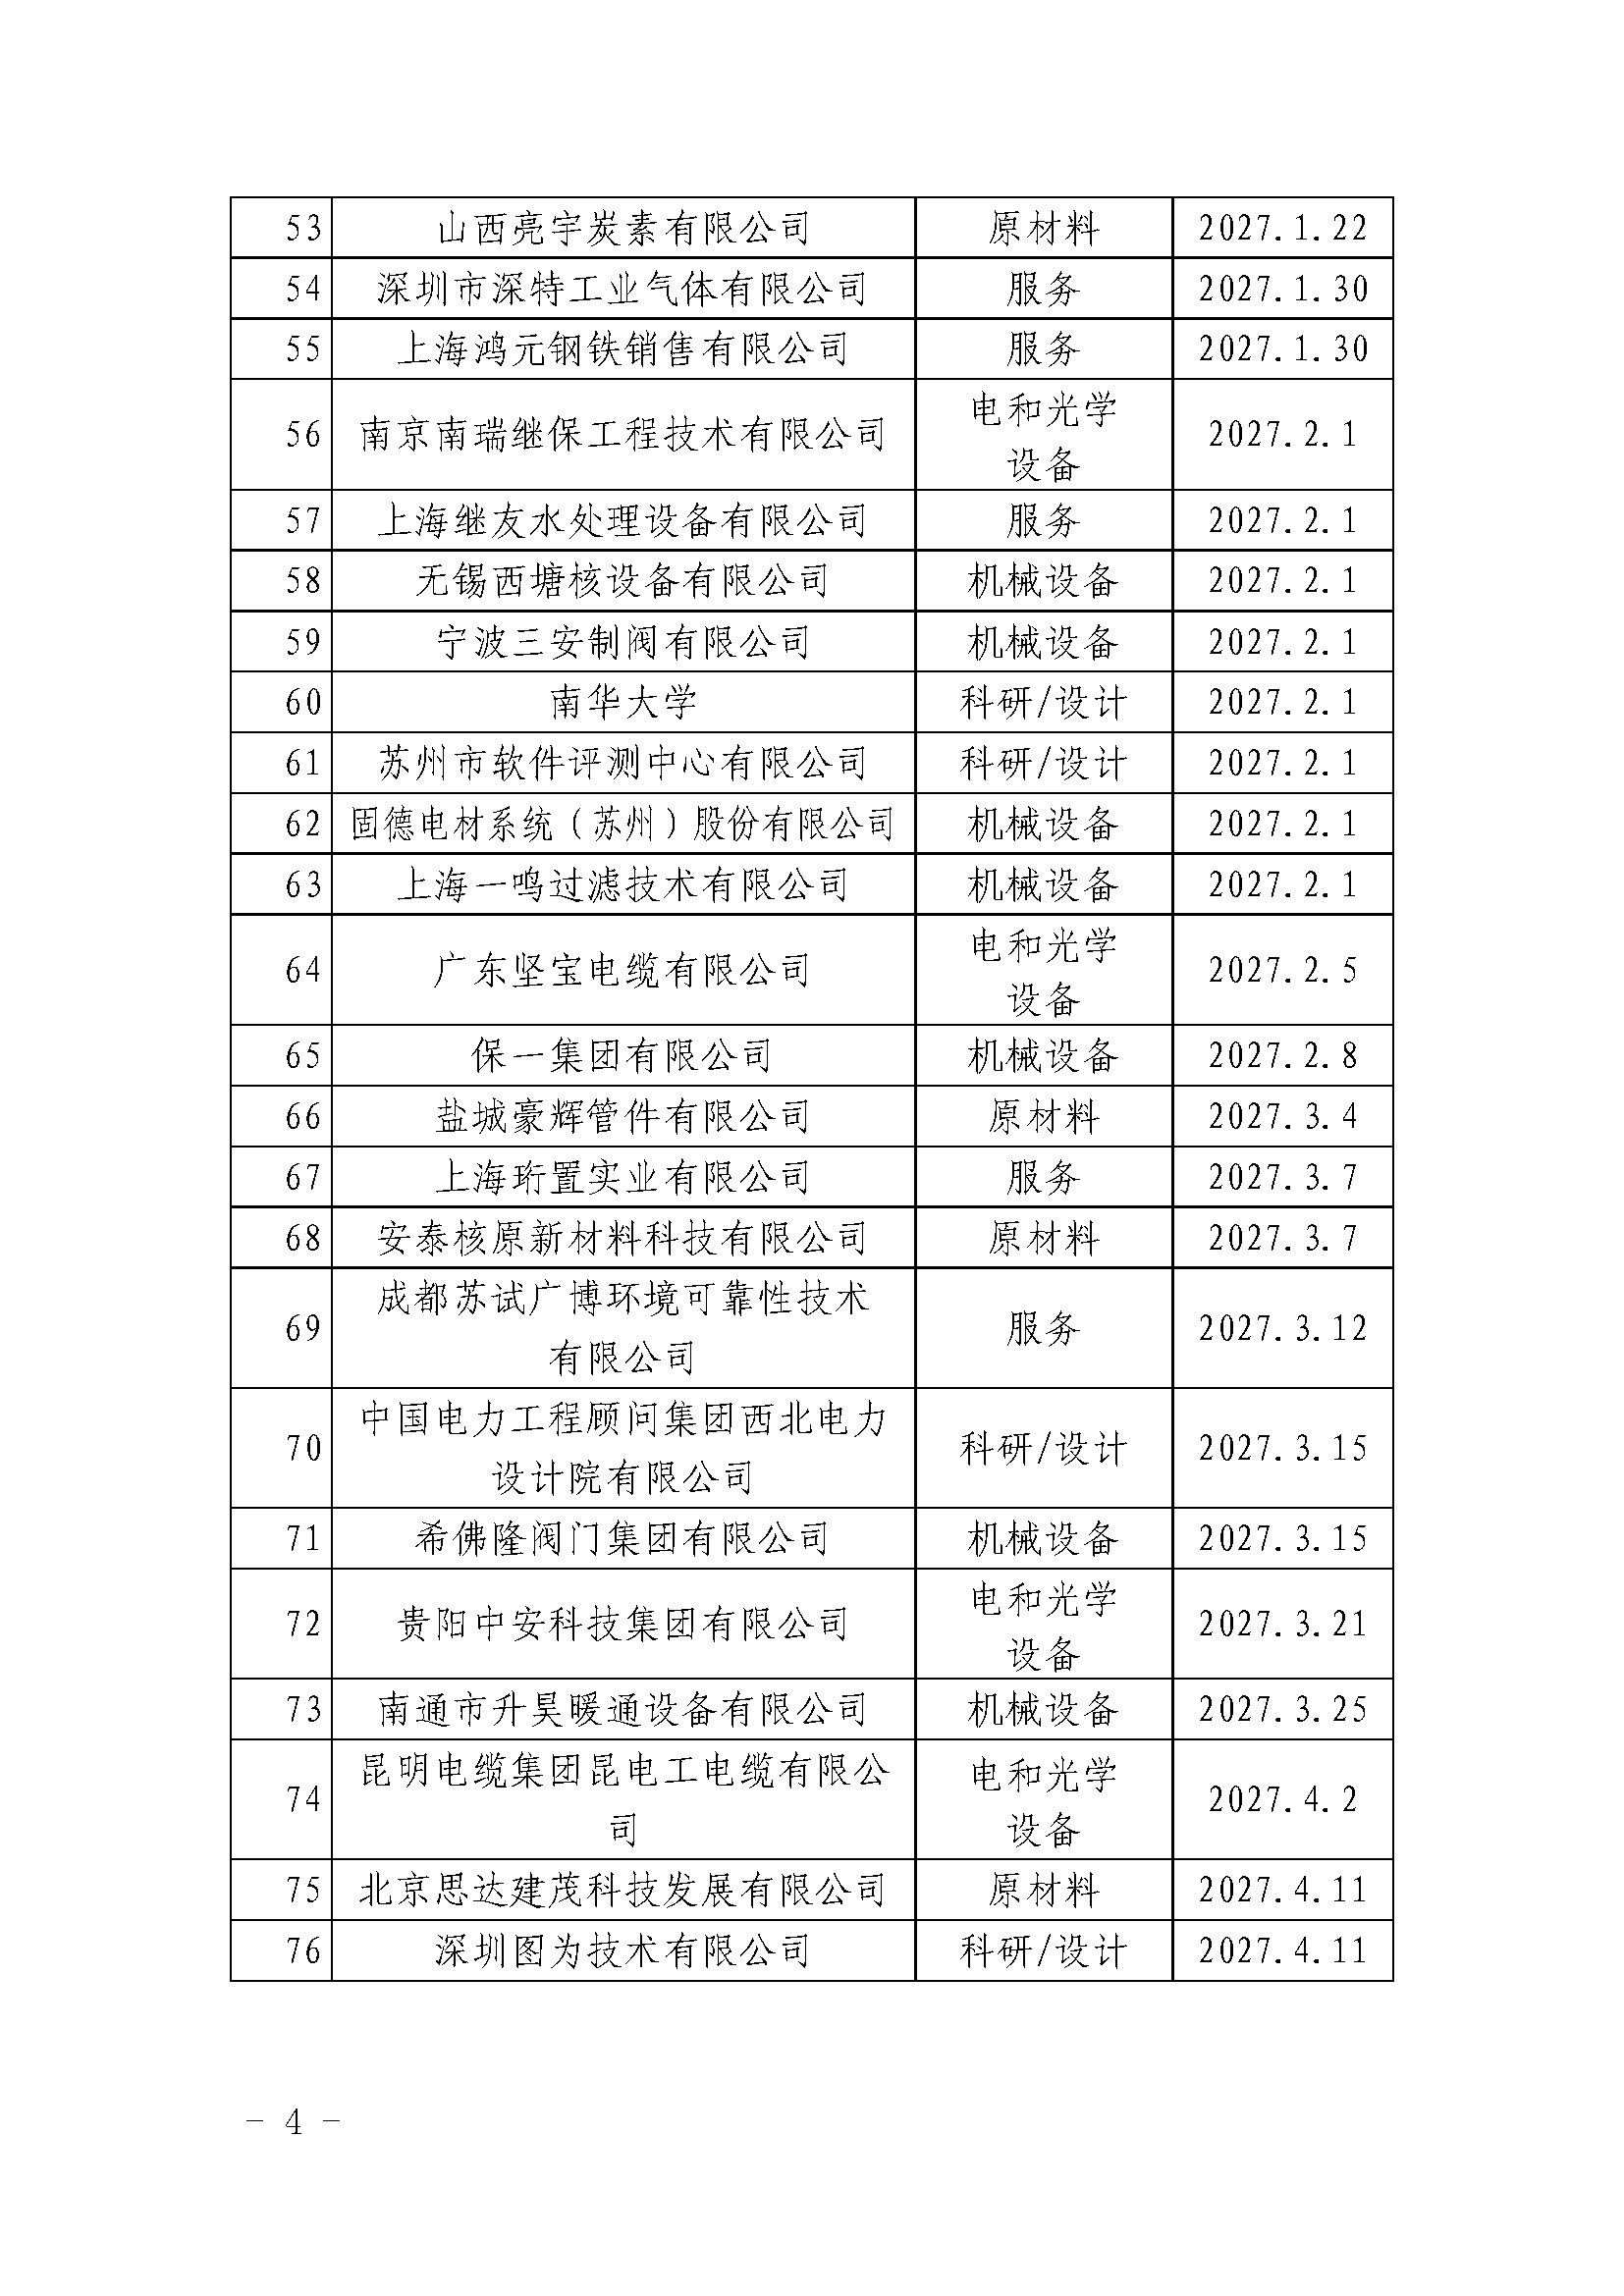 中国核能行业协会关于发布第三十批核能行业合格供应商名录的公告_页面_4.jpg